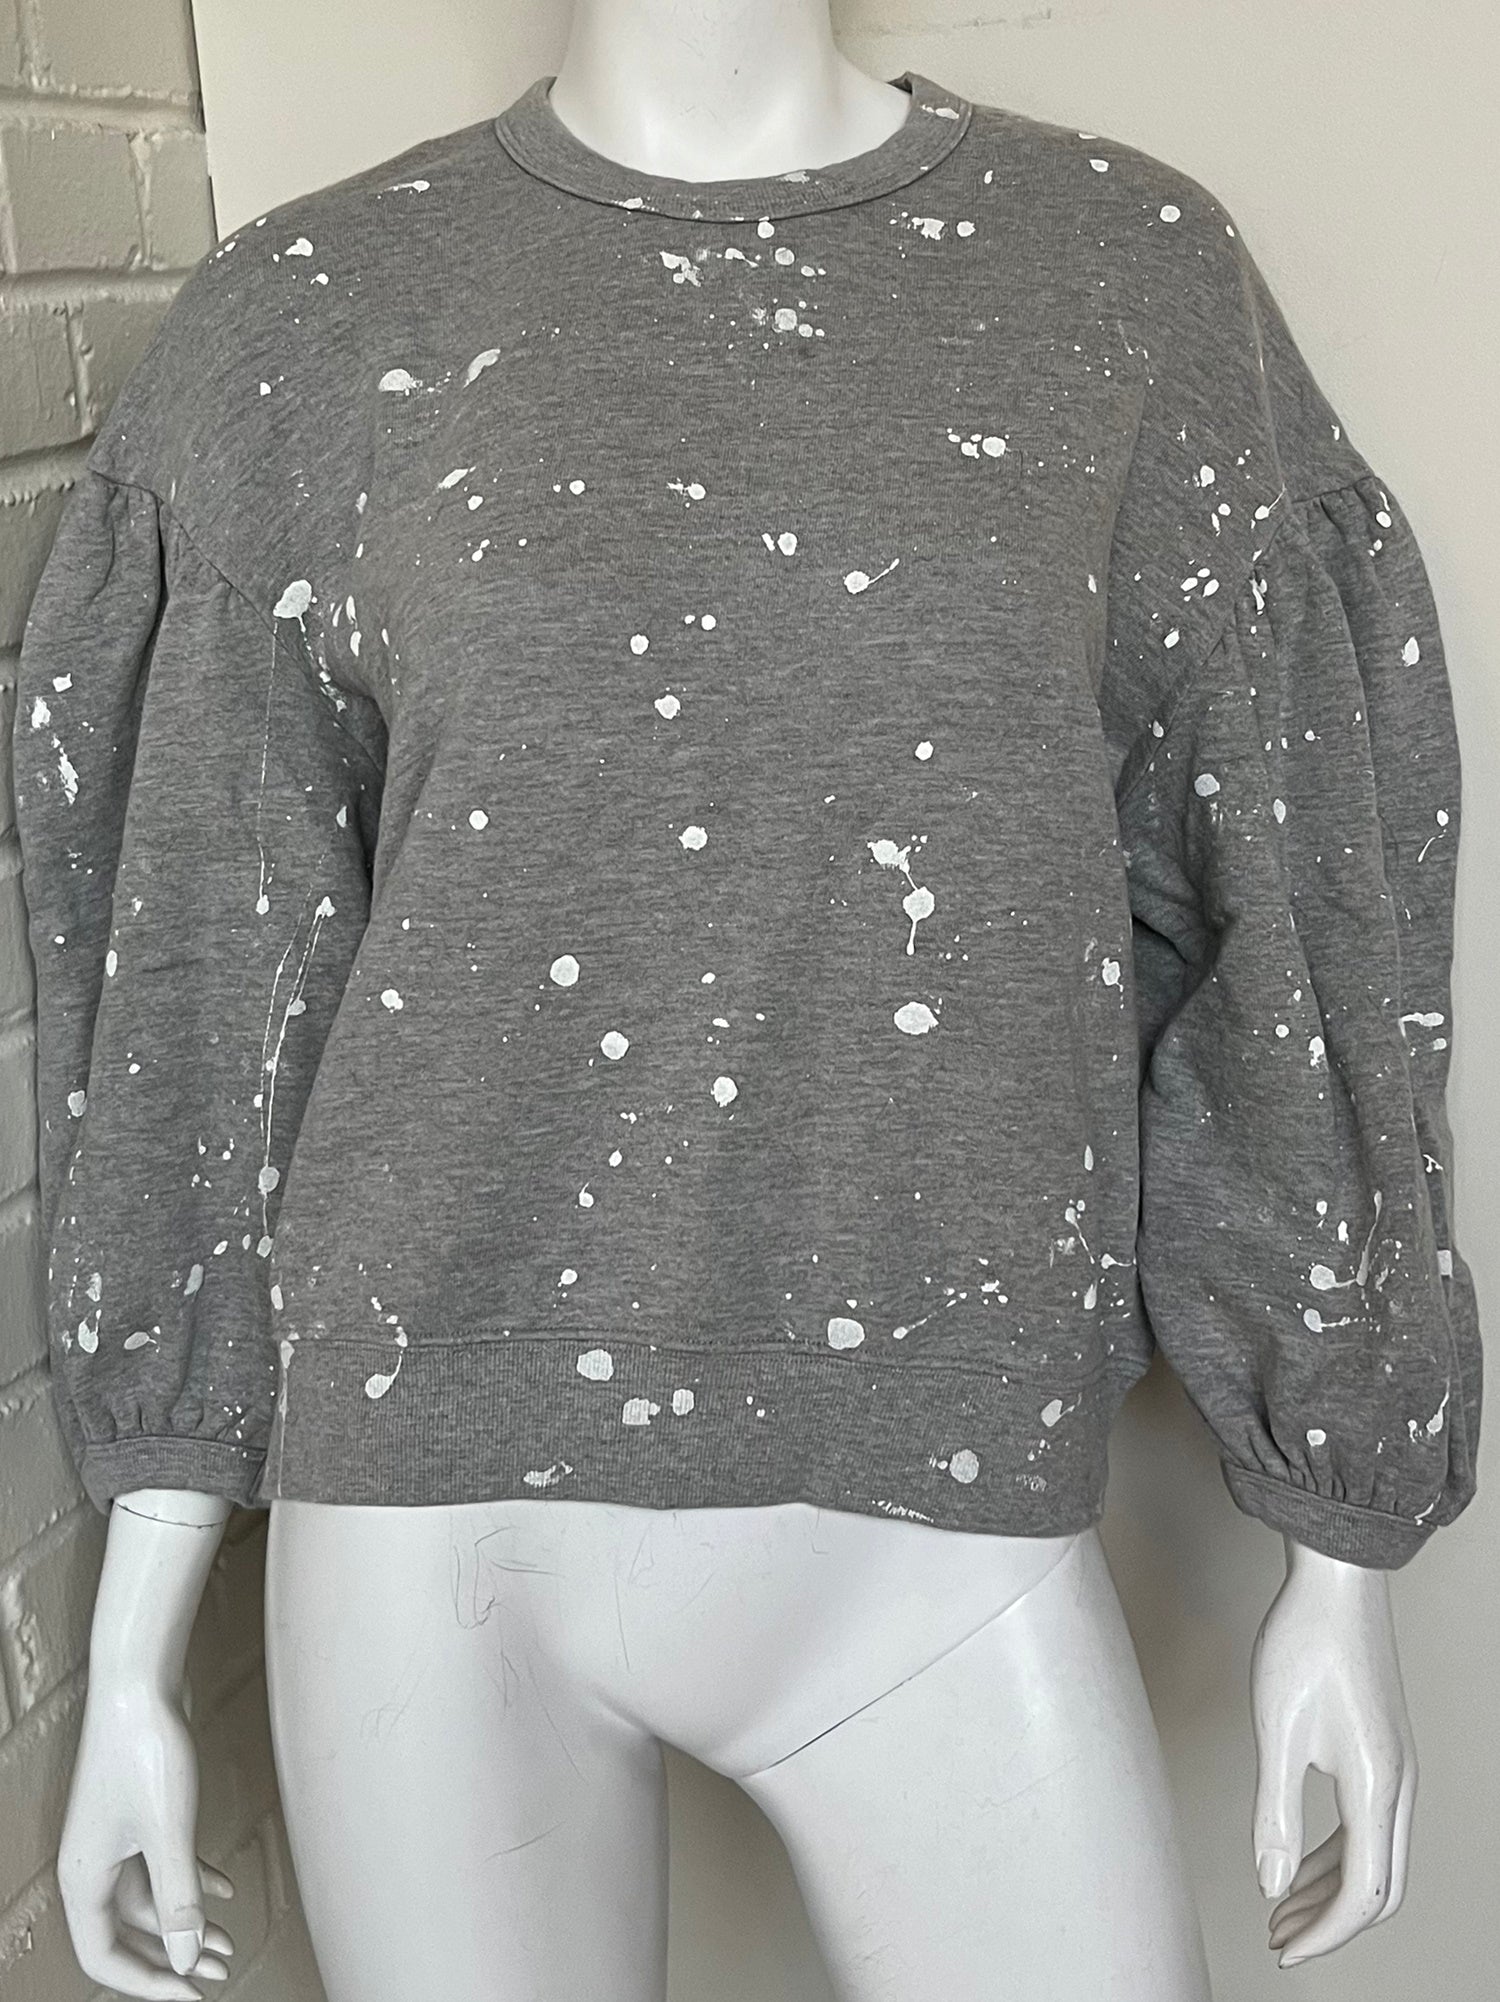 Drop Shoulder Splatter Sweatshirt Size Medium